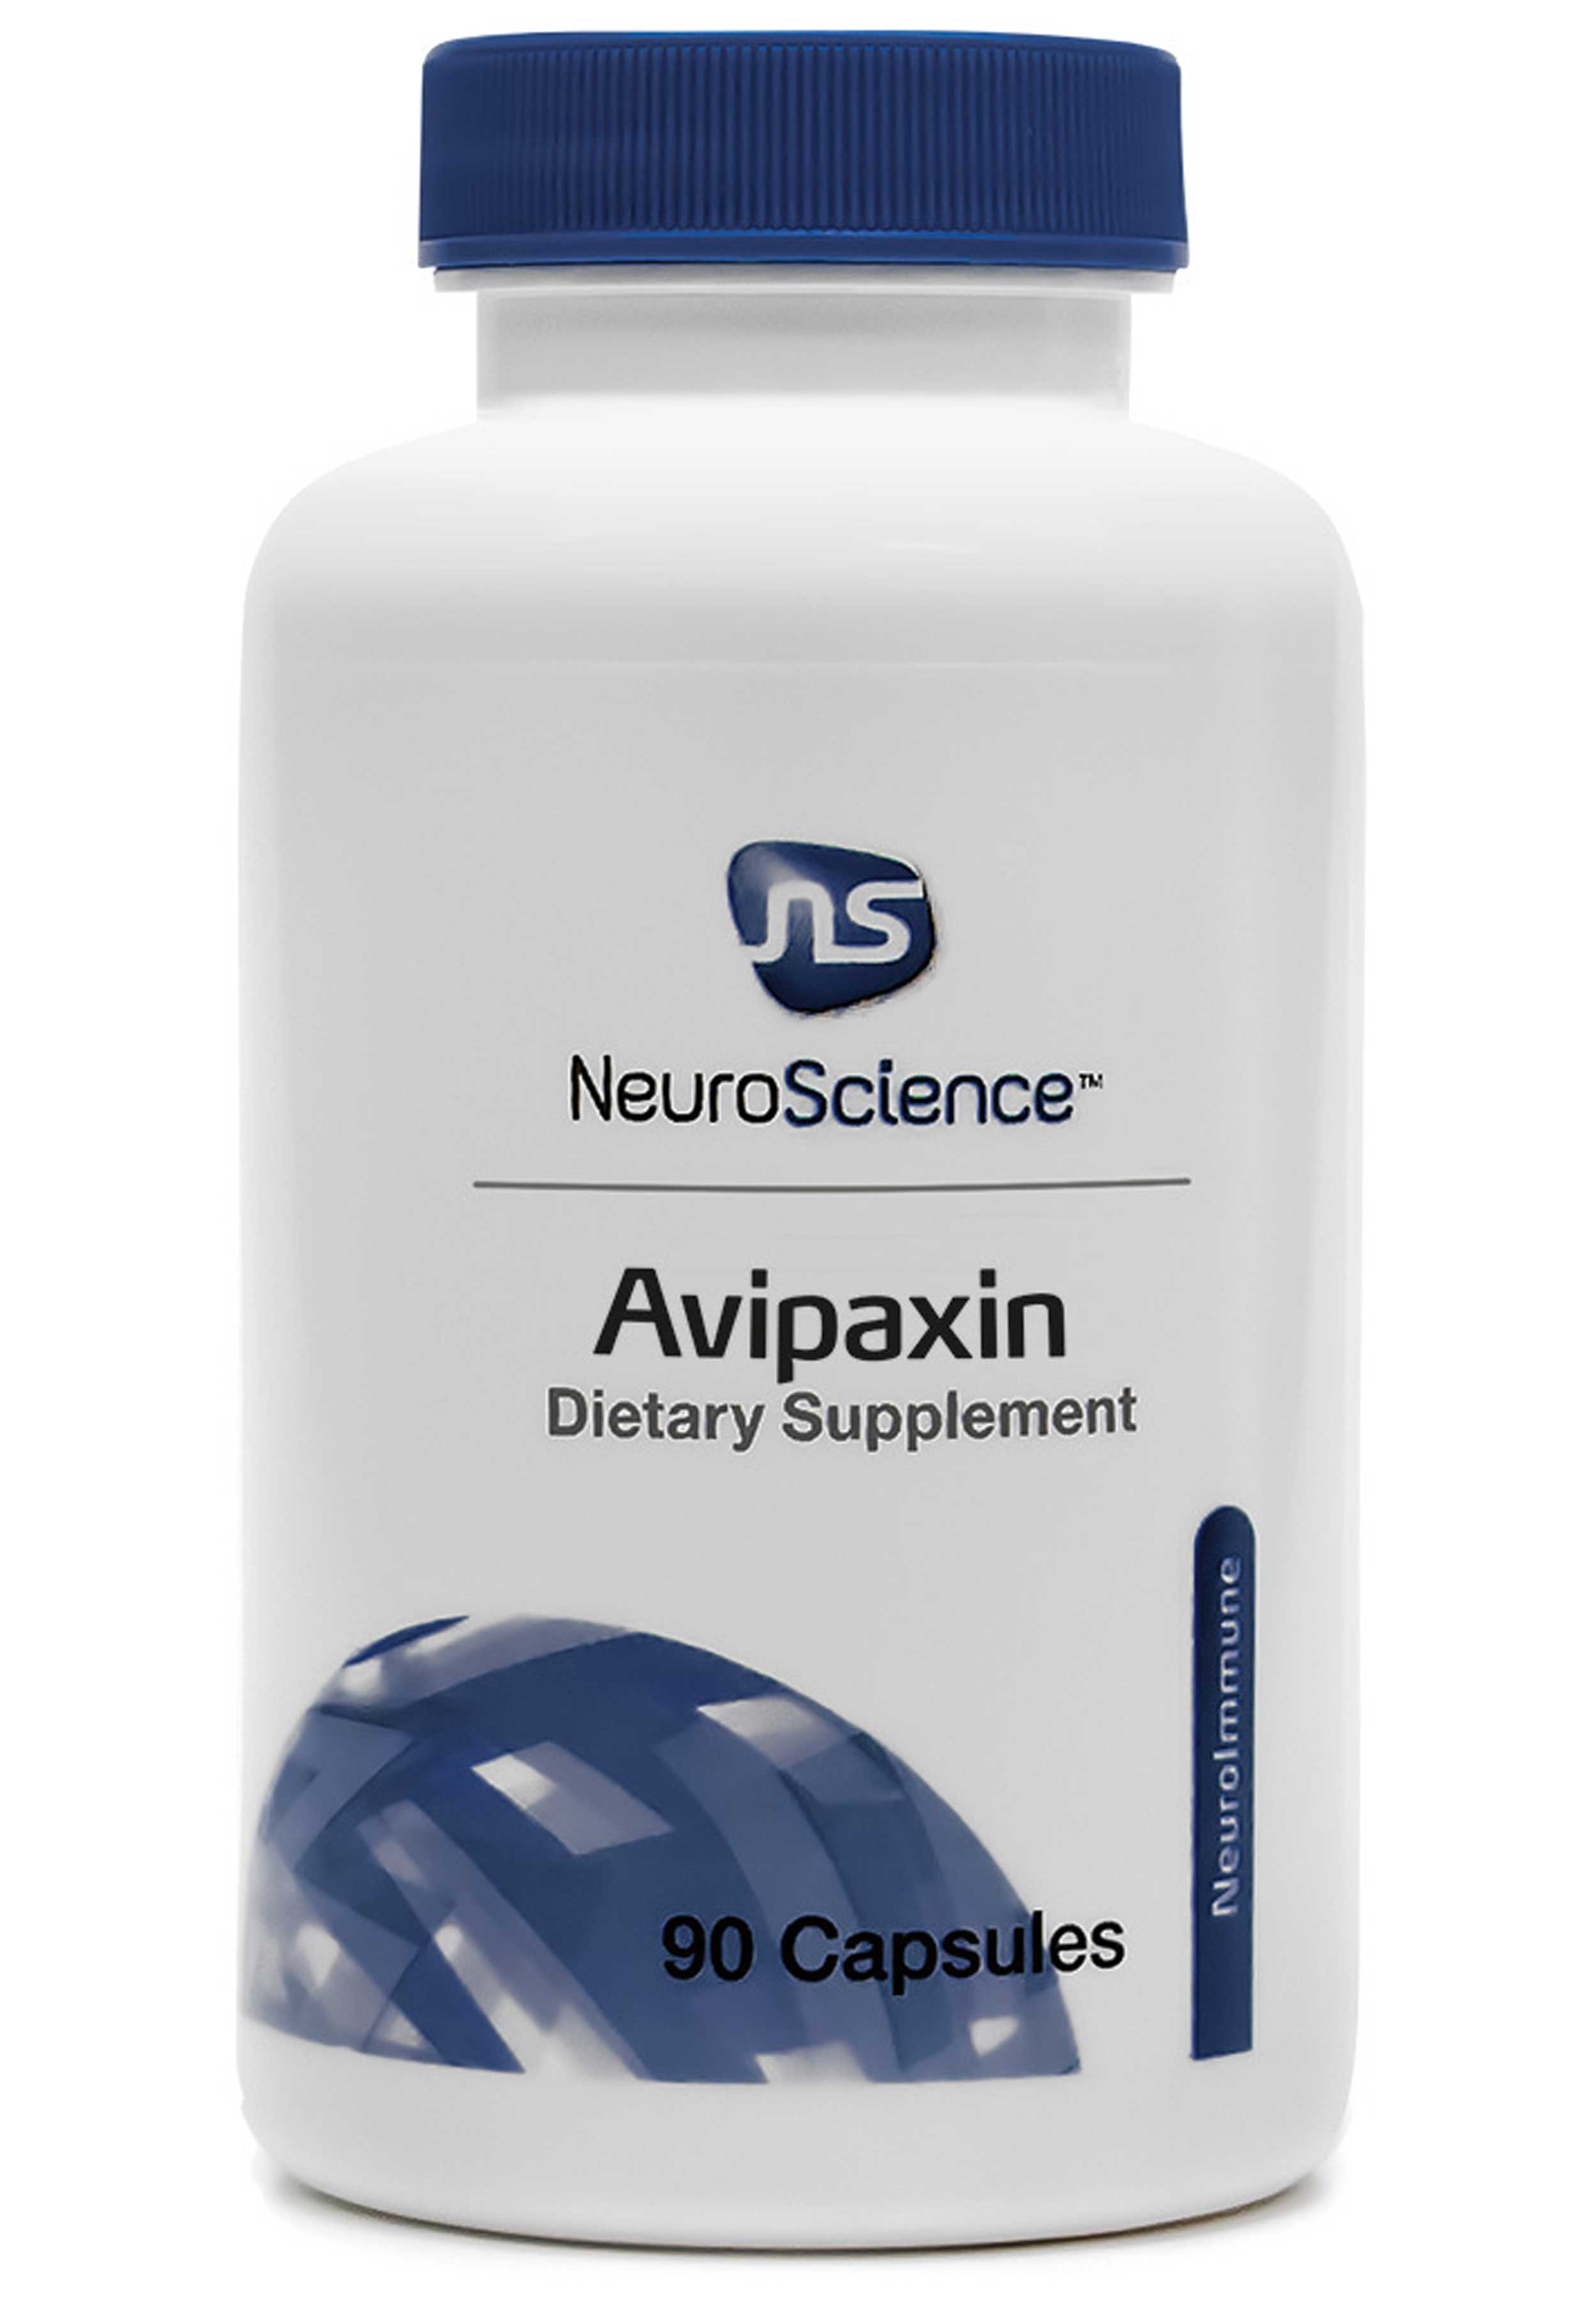 NeuroScience Avipaxin